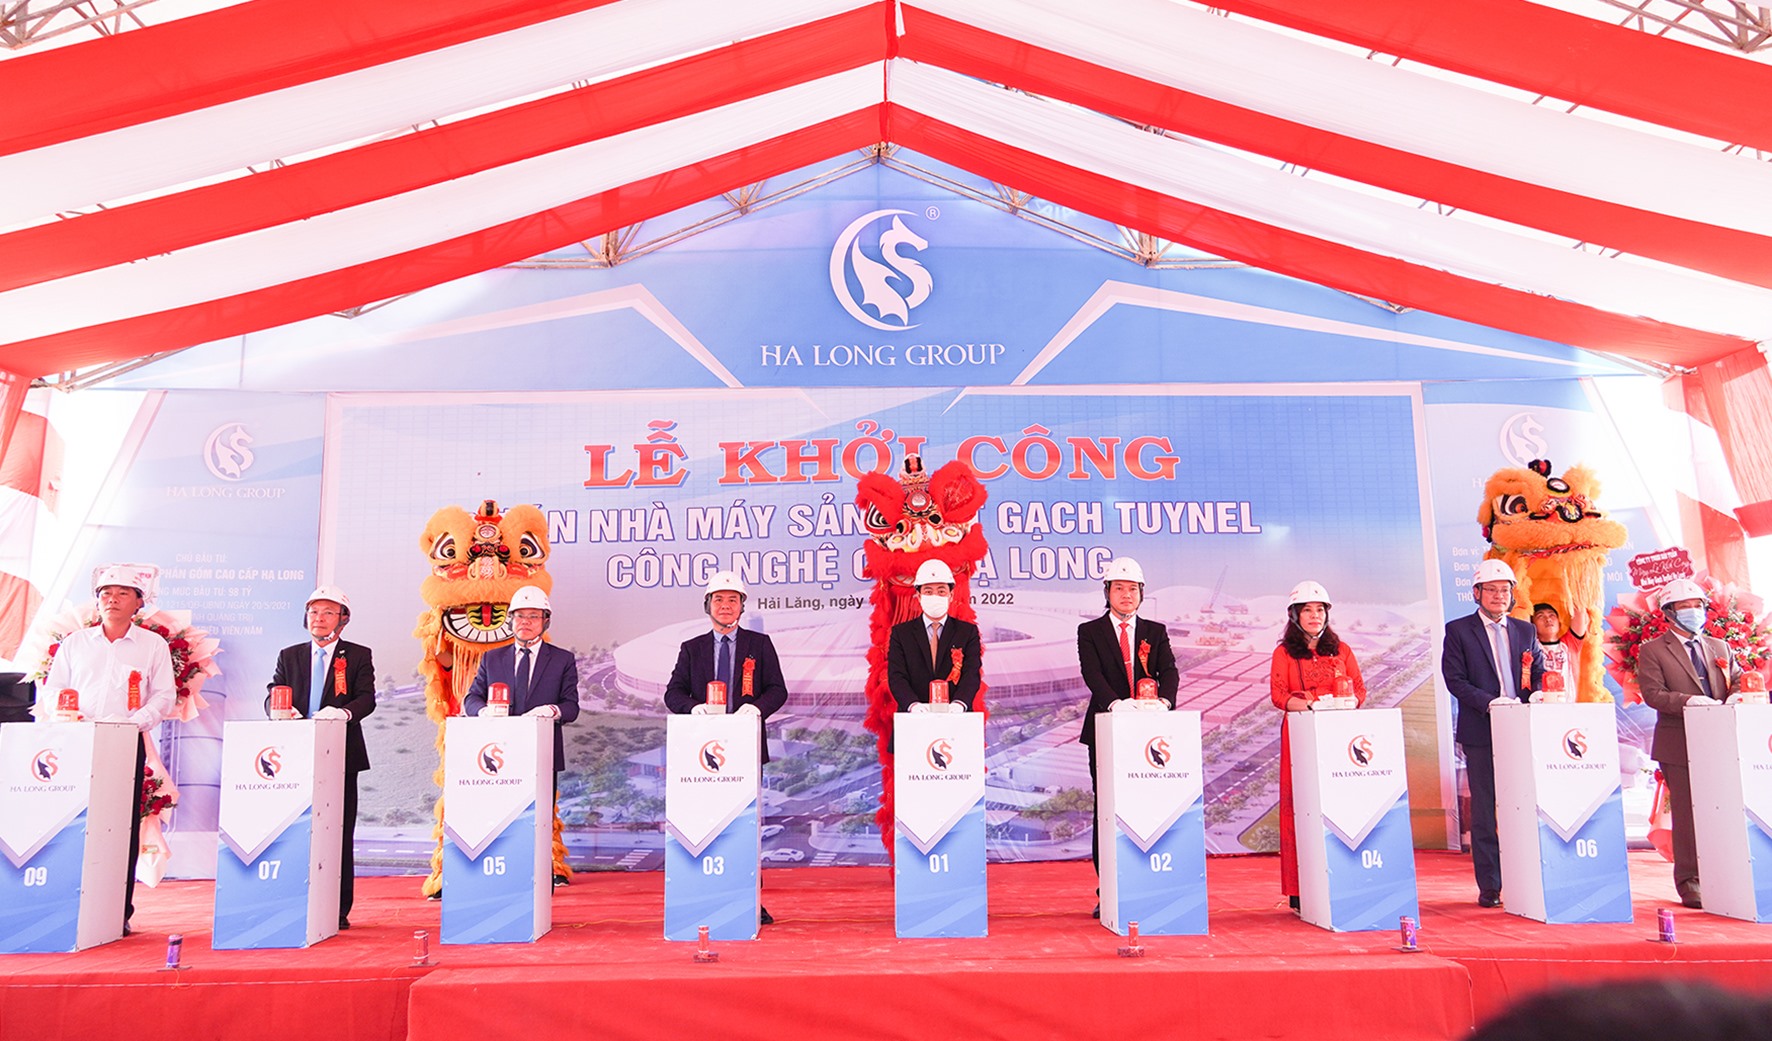 Lãnh đạo tỉnh, huyện Hải Lăng và chủ đầu tư bấm nút khởi công nhà máy -Ảnh: Hồng Hà